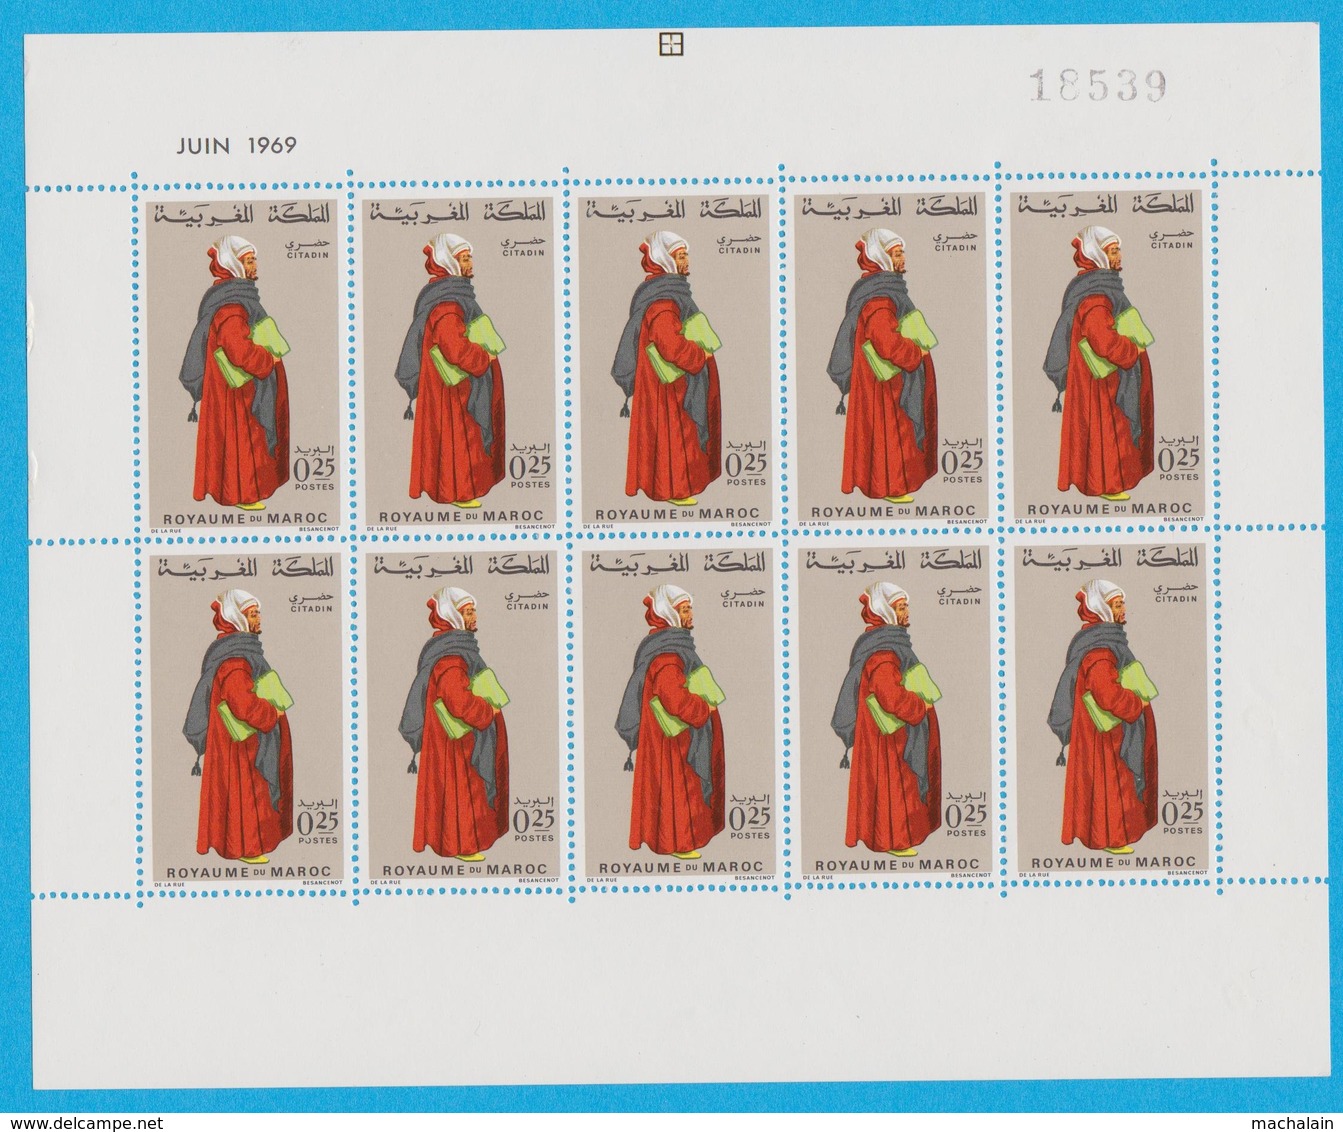 Lot timbres du Maroc tous Neufs** luxe cote = plus de 2600.00 €